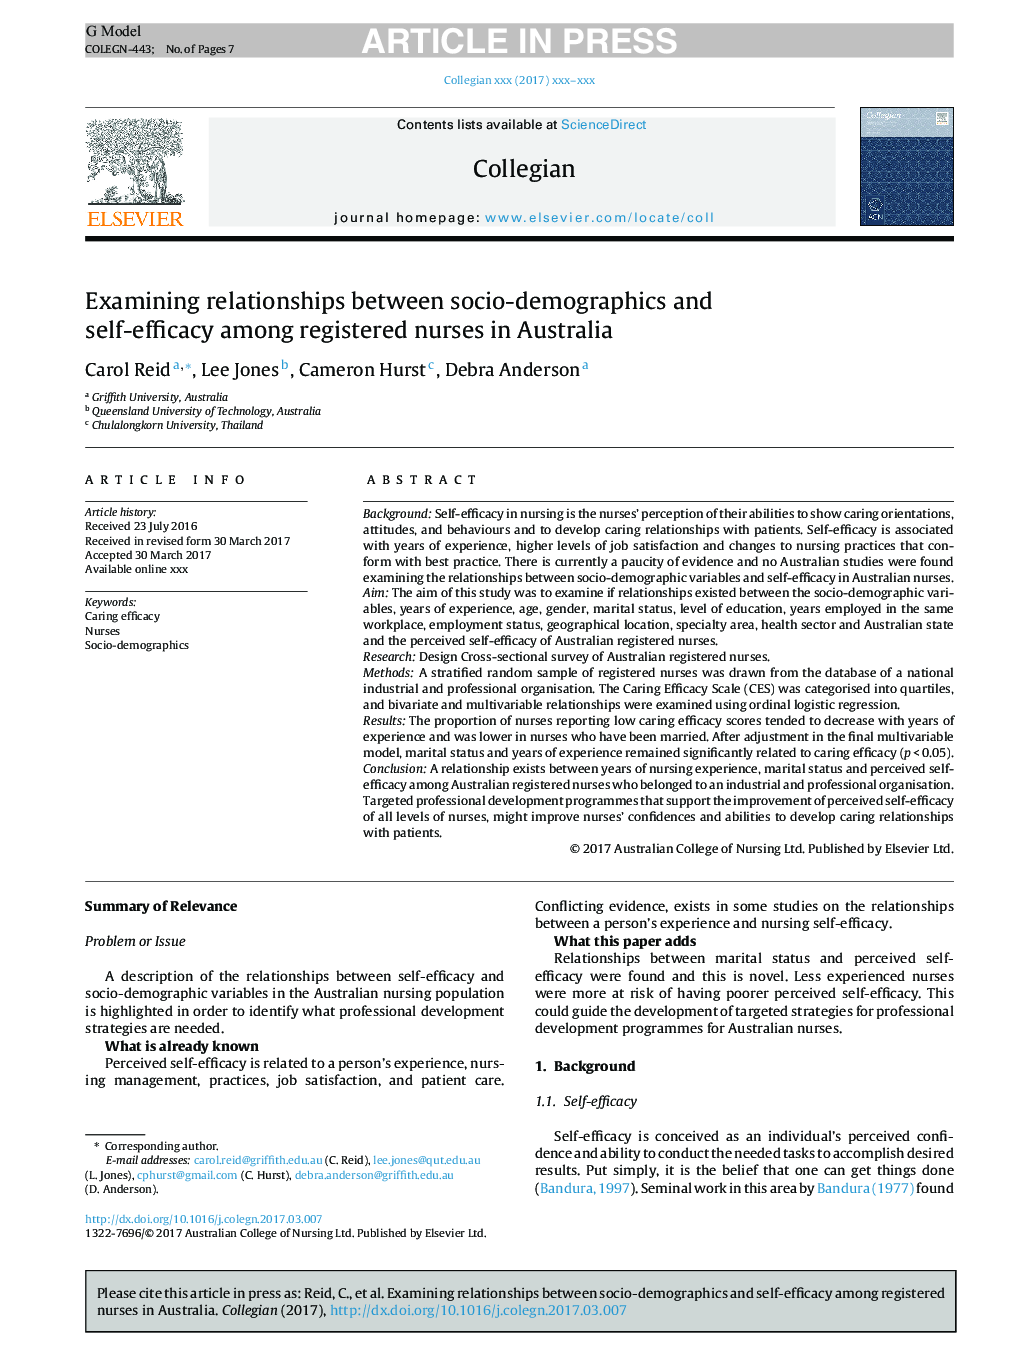 بررسی رابطه بین متغیرهای جمعیت شناختی و خودکارآمدی در پرستاران ثبت شده در استرالیا 